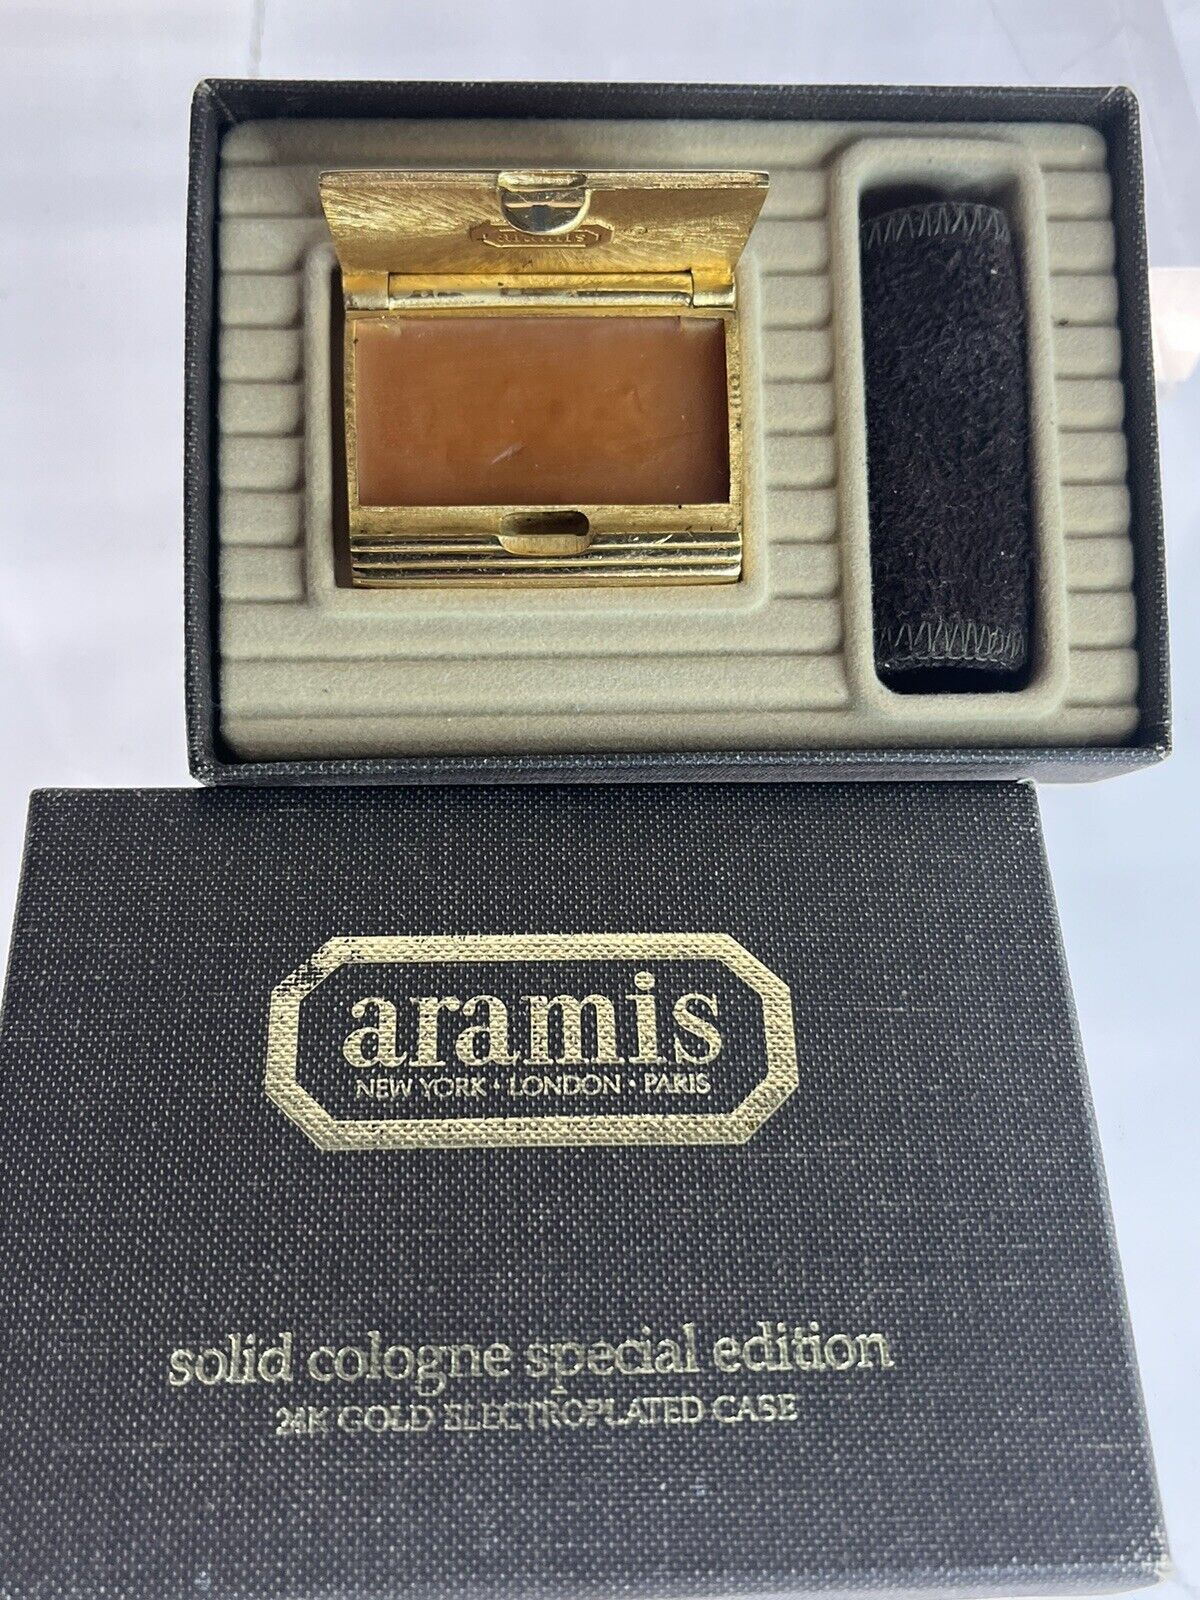 vintage 1982 ARAMIS men Solid cologne 24k gold-p in original box Rare unused gem